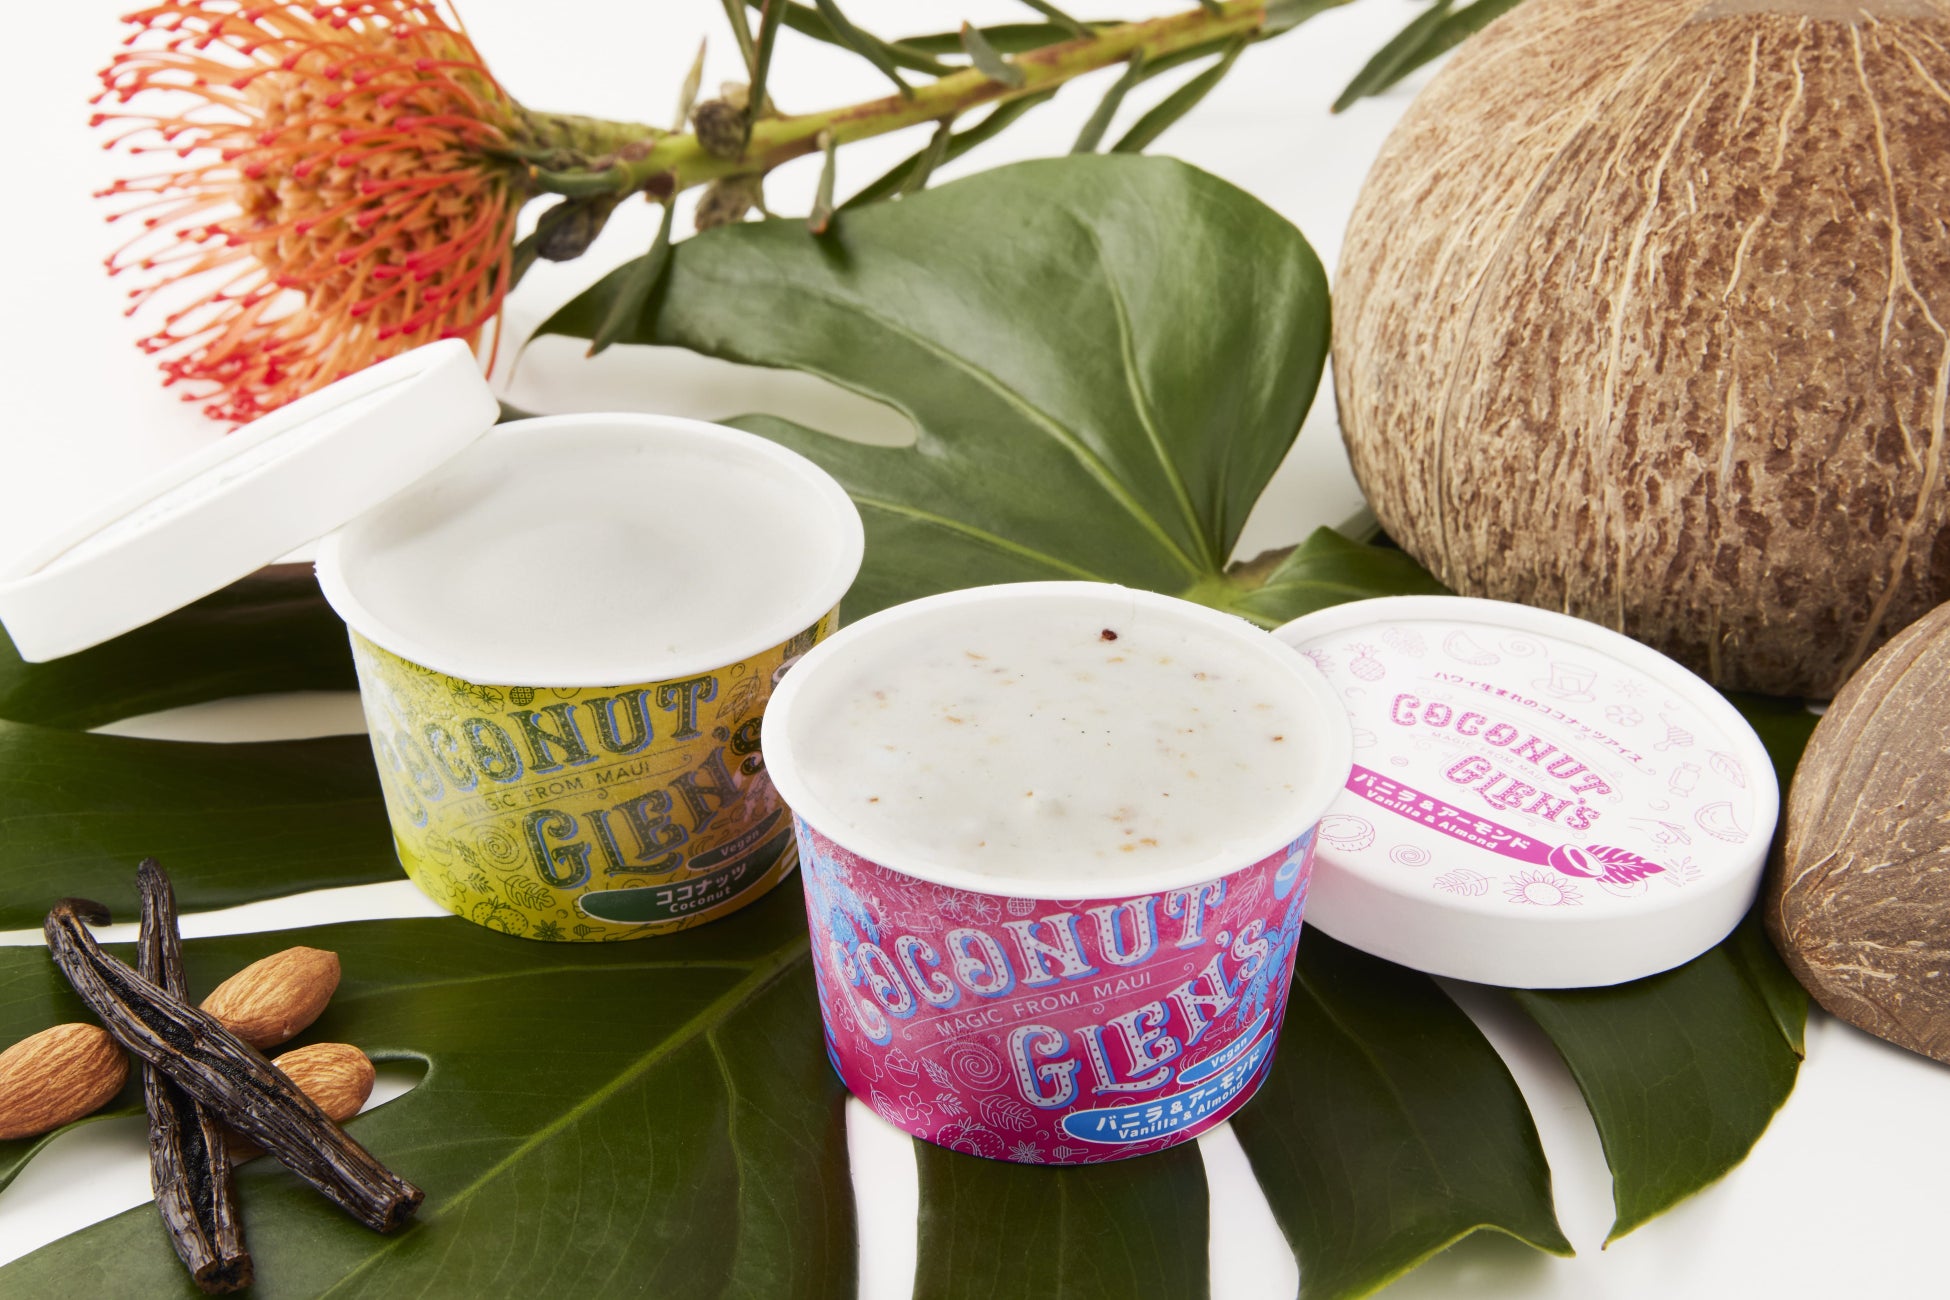 ミシュランシェフがジャングルの奥地で開発したハワイ・マウイ島生まれの濃厚ヴィーガンココナッツアイスクリーム